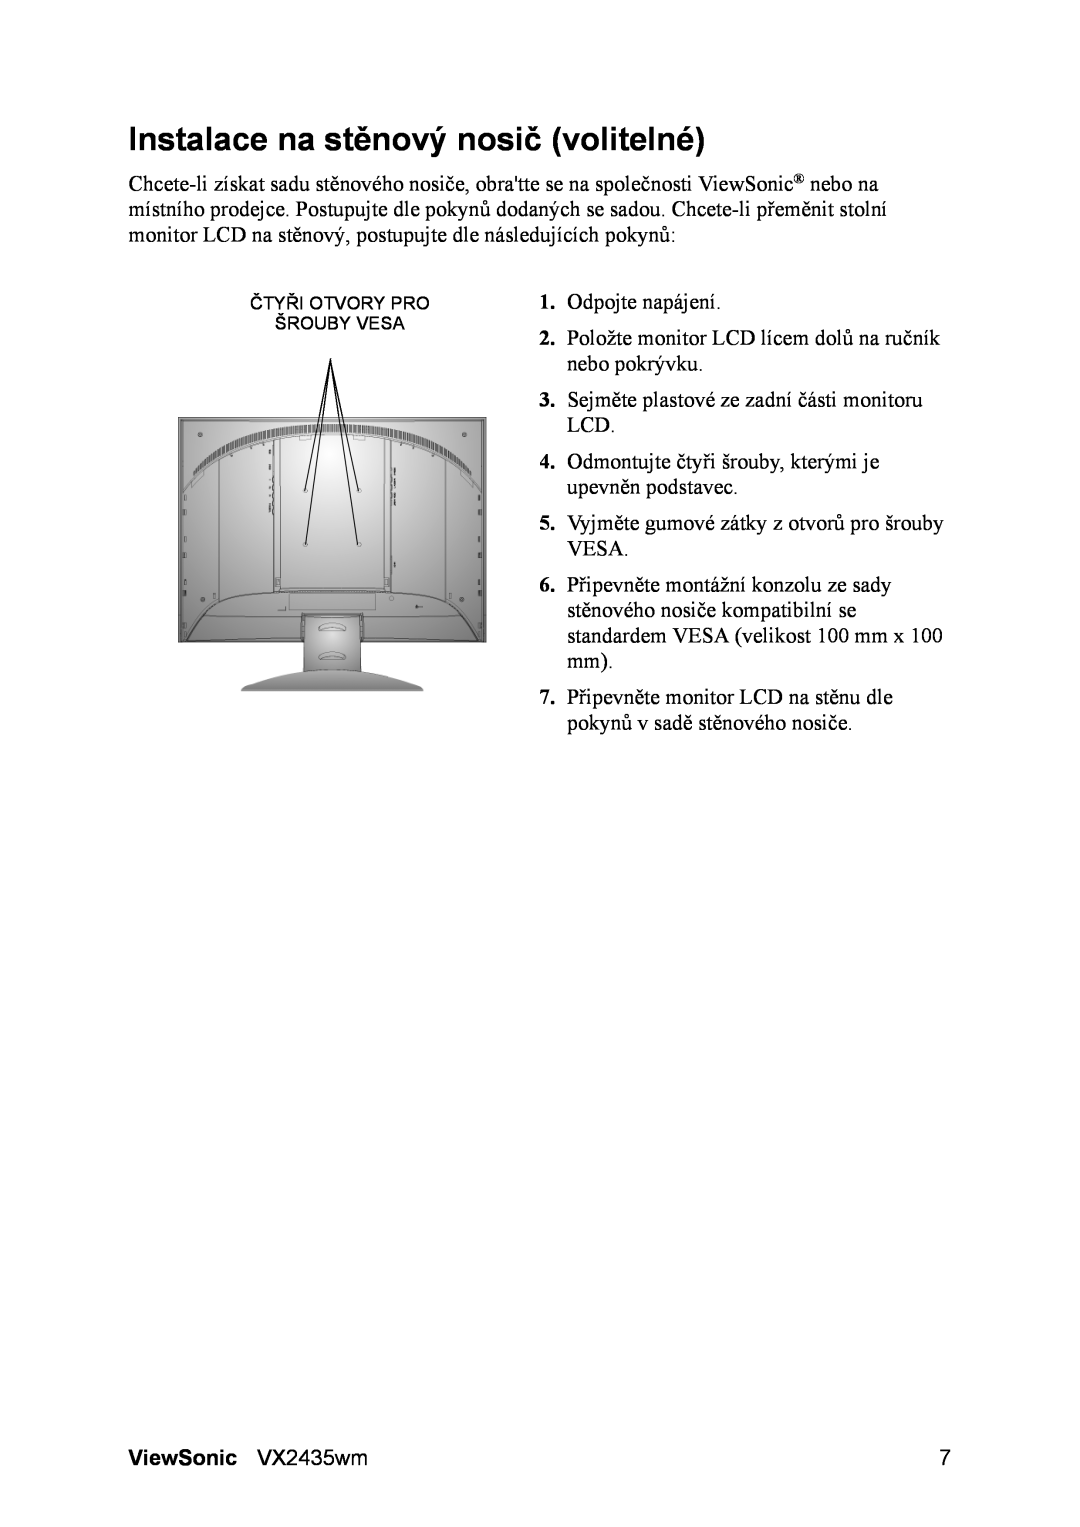 ViewSonic VS11449 manual Instalace na stěnový nosič volitelné, ViewSonic VX2435wm 